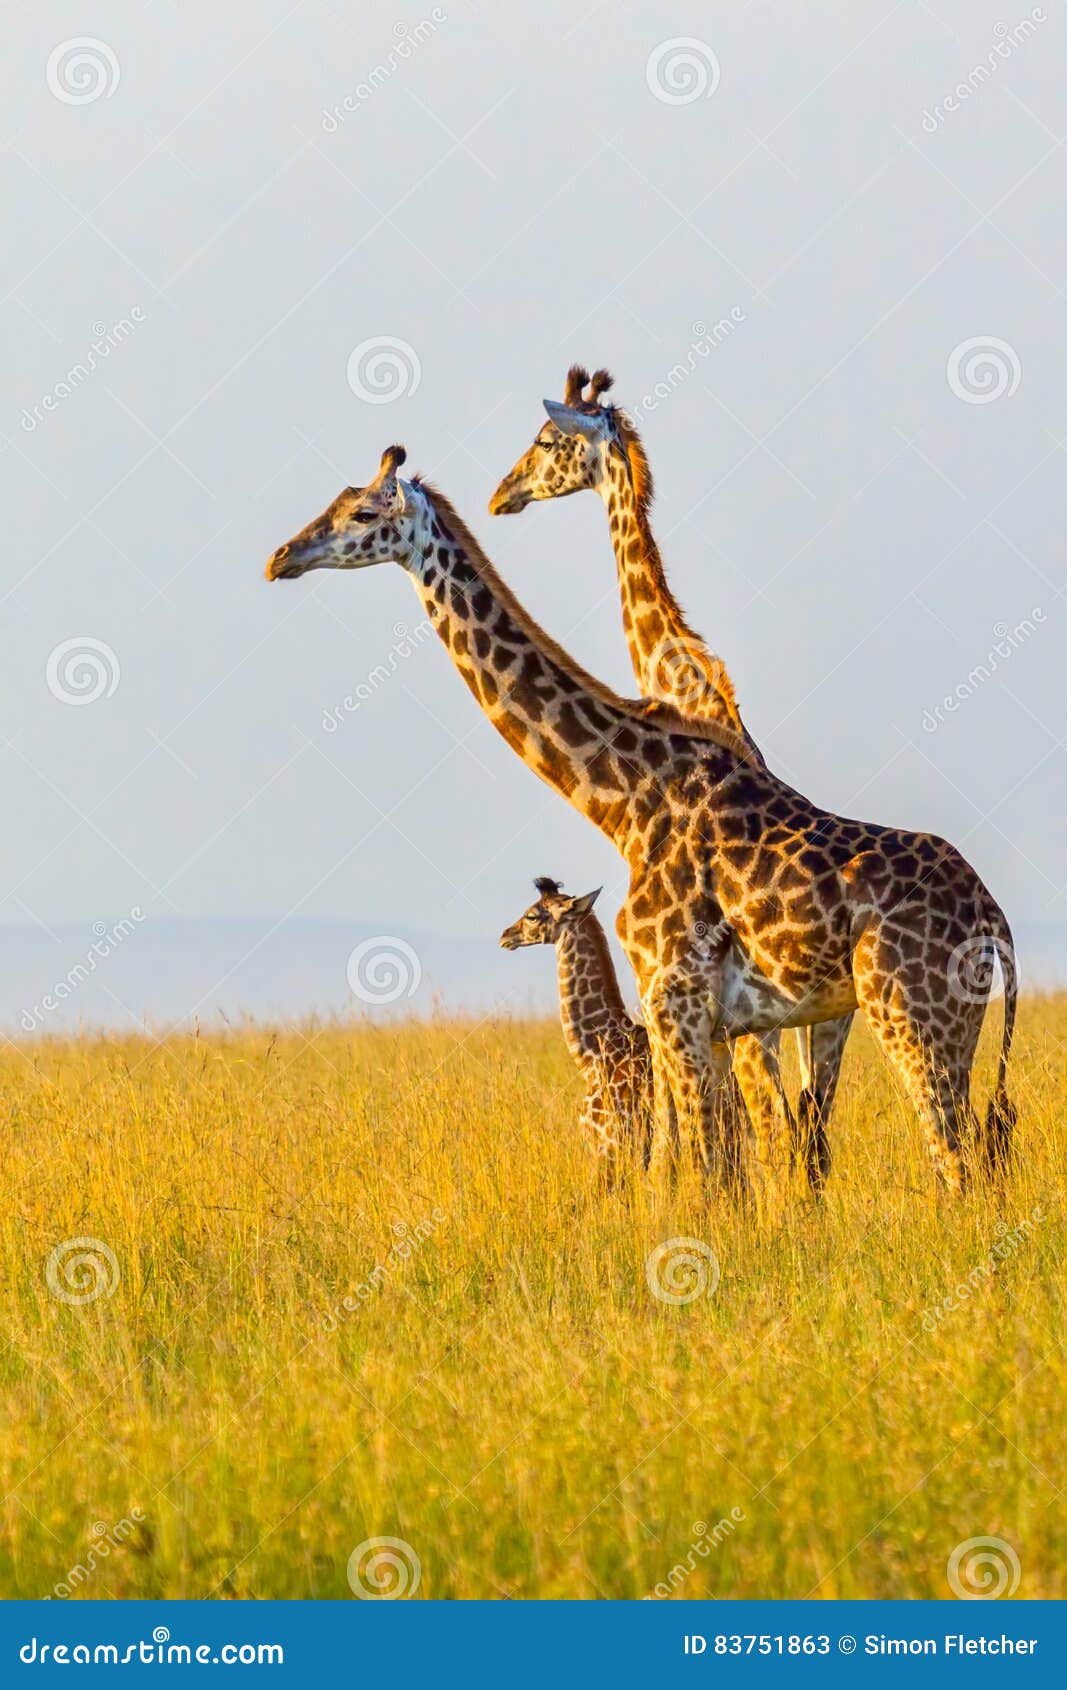 masai giraffe family